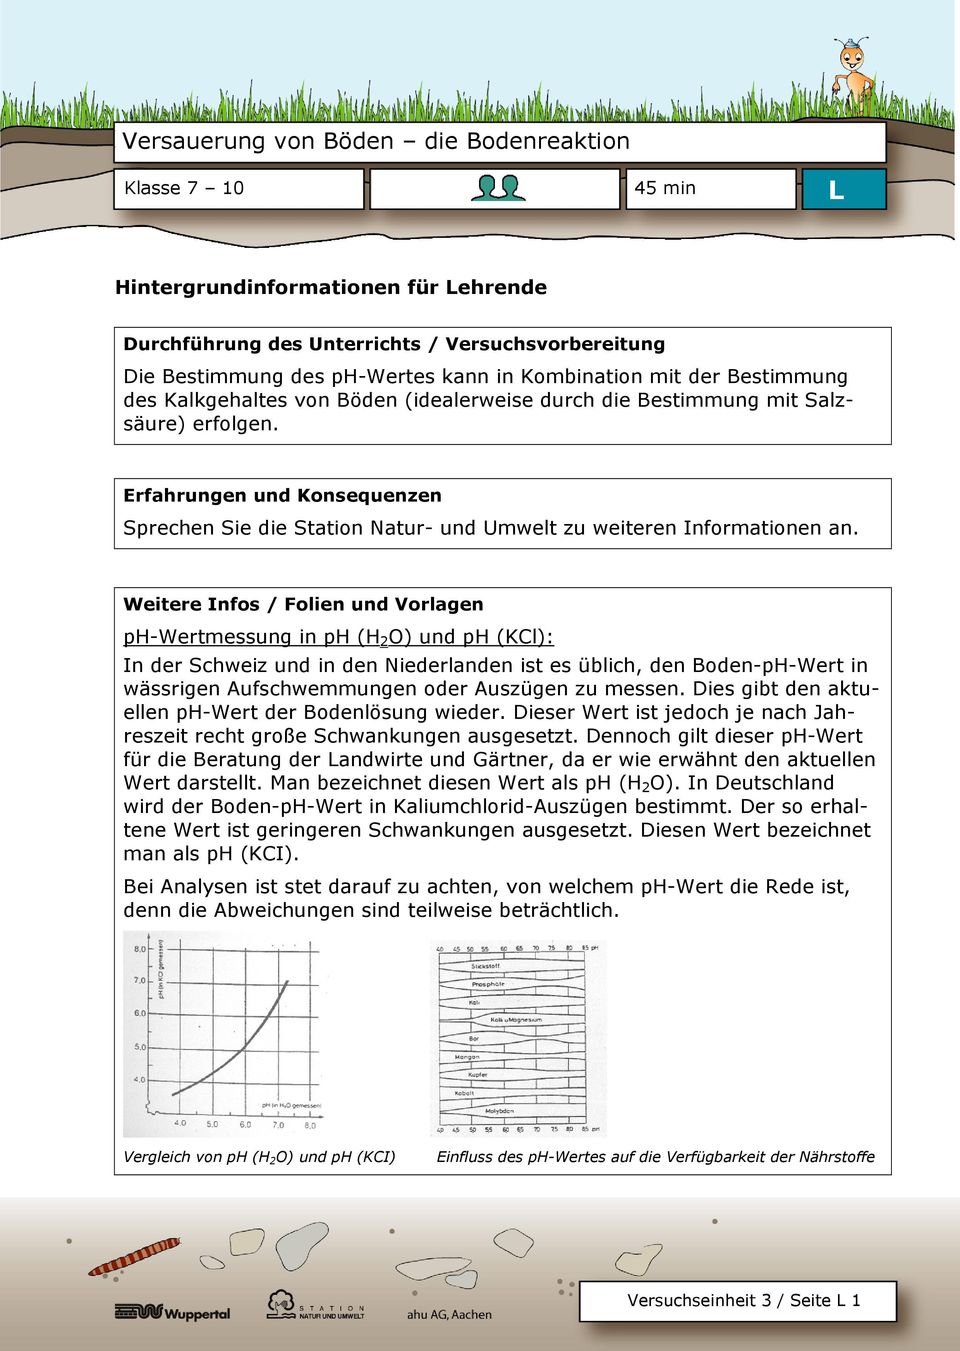 Weitere Infos / Folien und Vorlagen ph-wertmessung in ph (H 2 O) und ph (KCl): In der Schweiz und in den Niederlanden ist es üblich, den Boden-pH-Wert in wässrigen Aufschwemmungen oder Auszügen zu